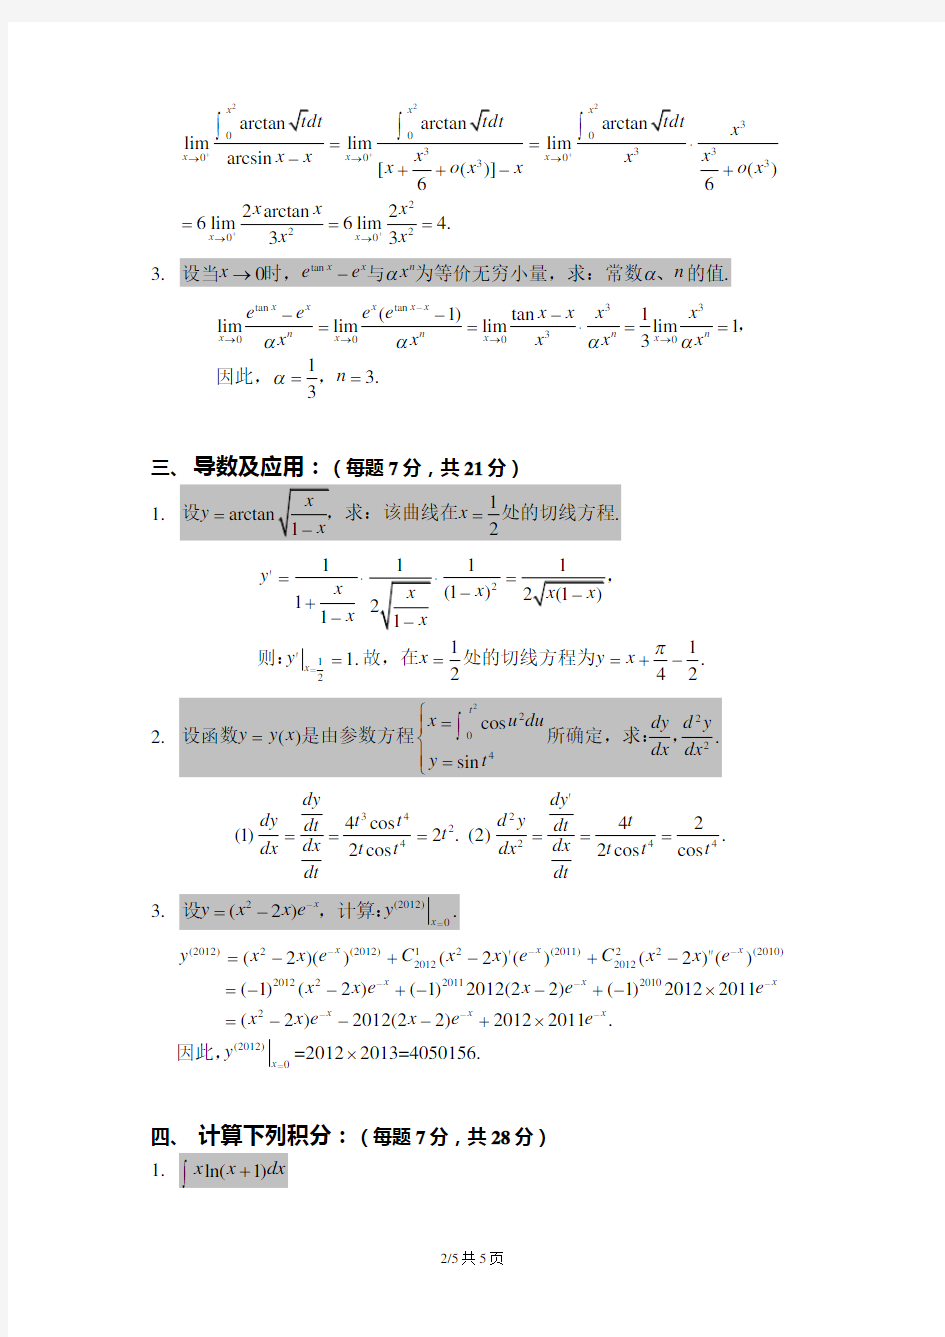 浙江大学2011-2012数学分析(1)-试卷及答案(baidu)